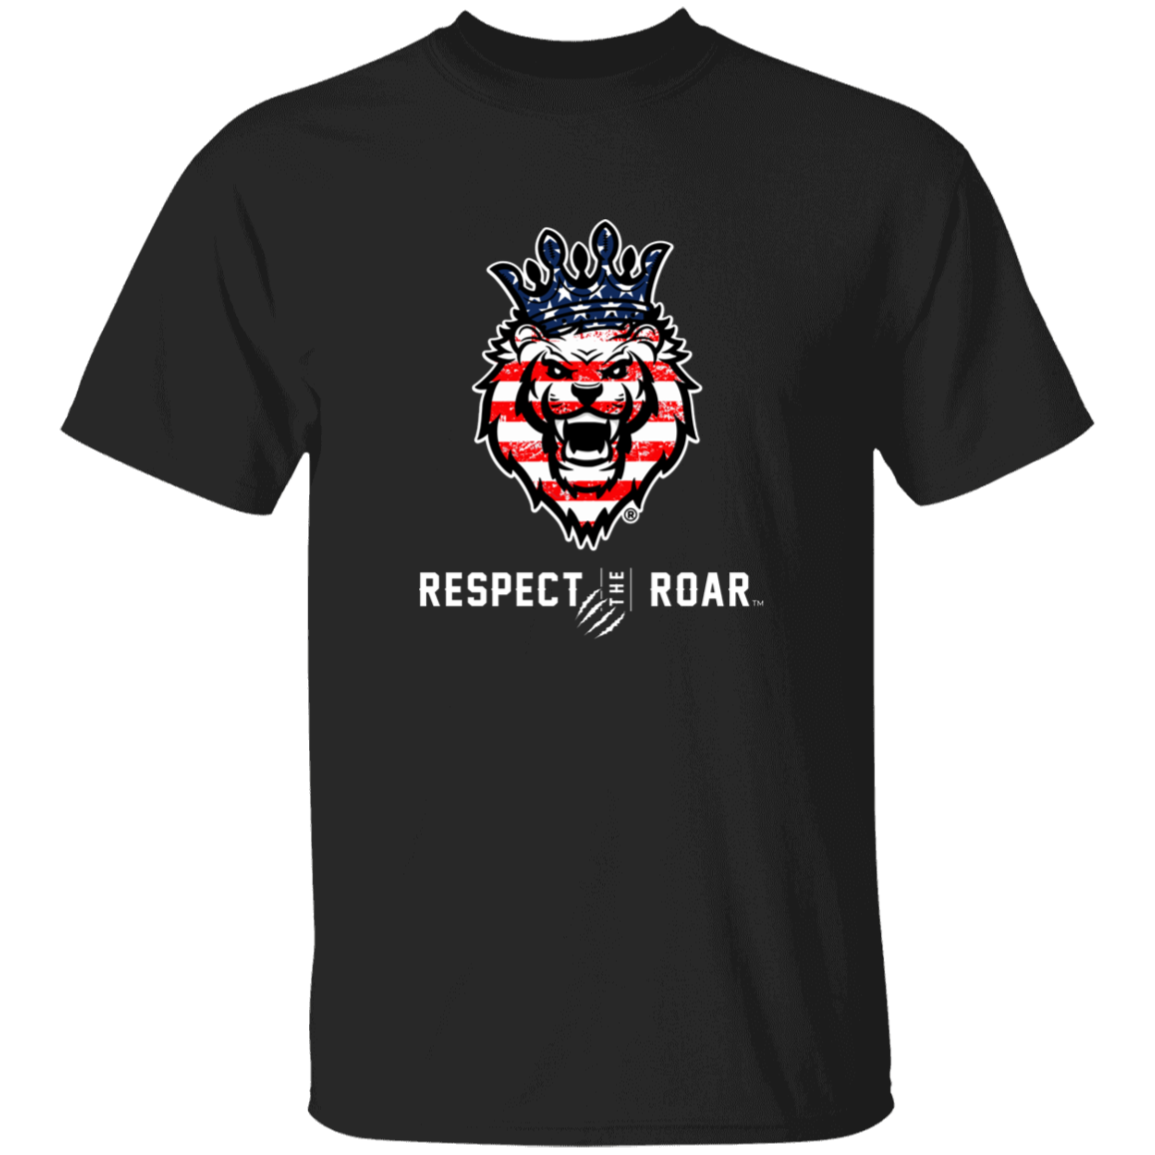 Respect The Roar (USA) - G500 5.3 oz. T-Shirt